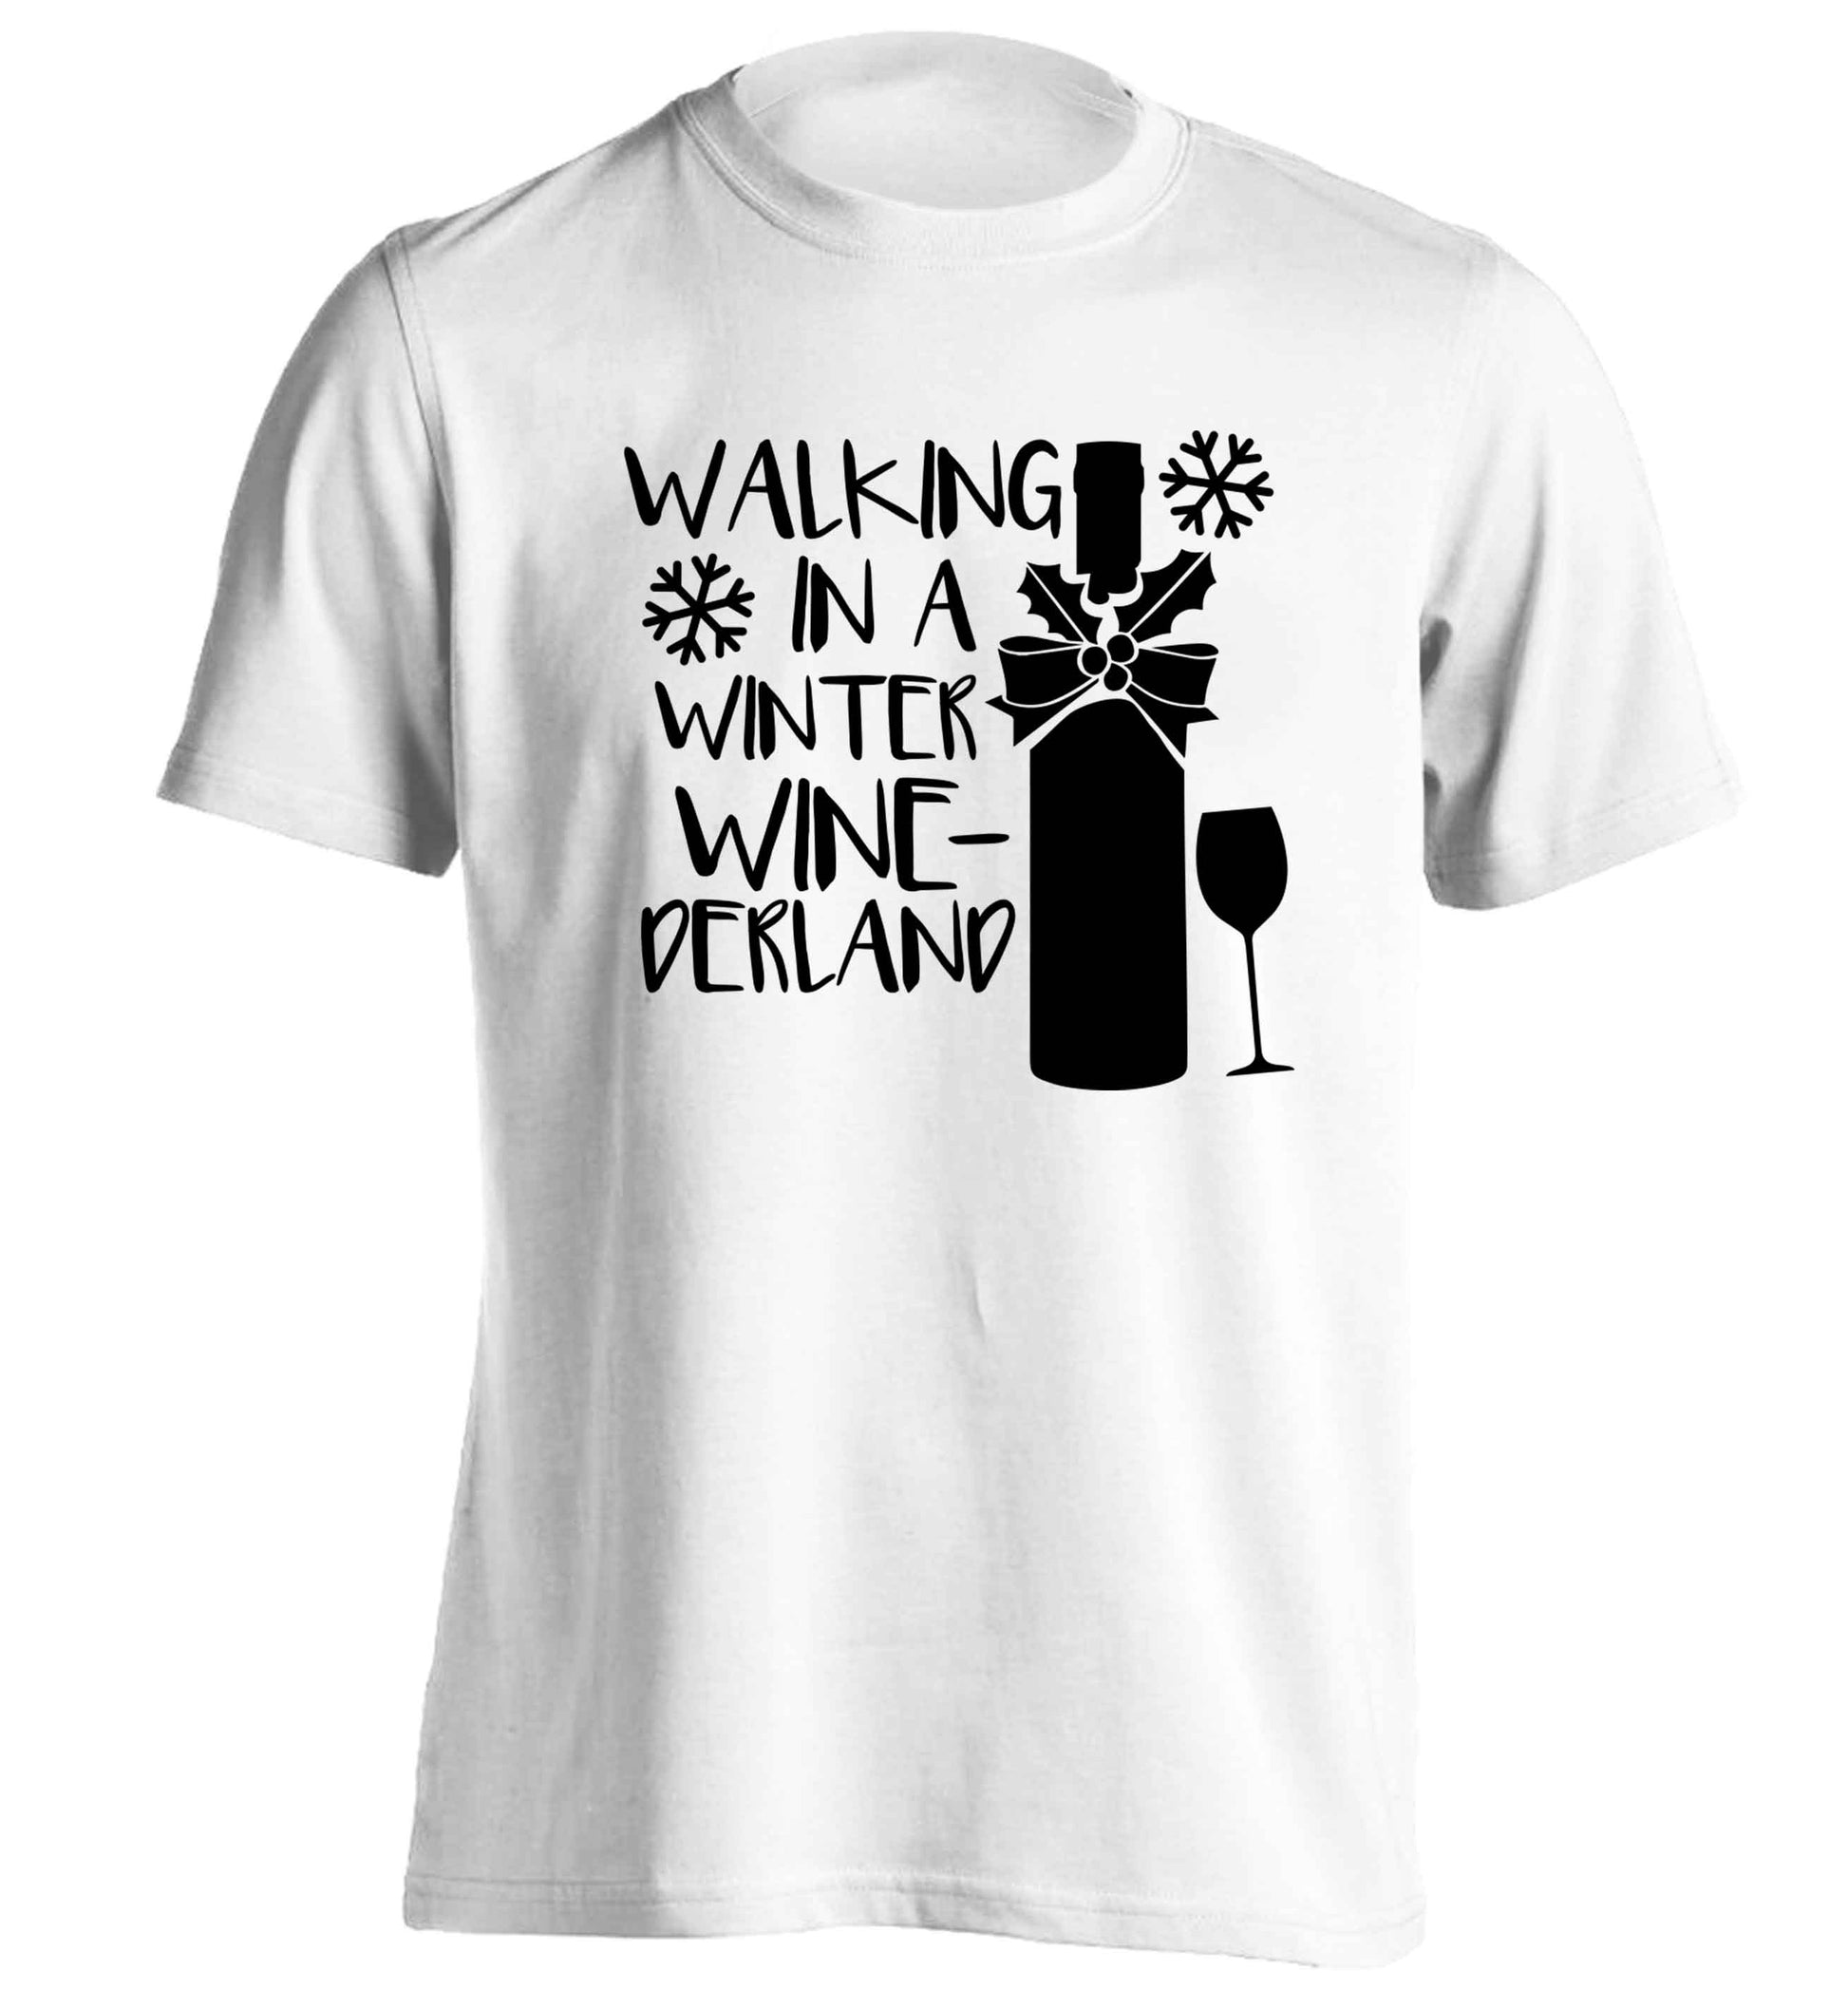 Walking in a wine-derwonderland adults unisex white Tshirt 2XL